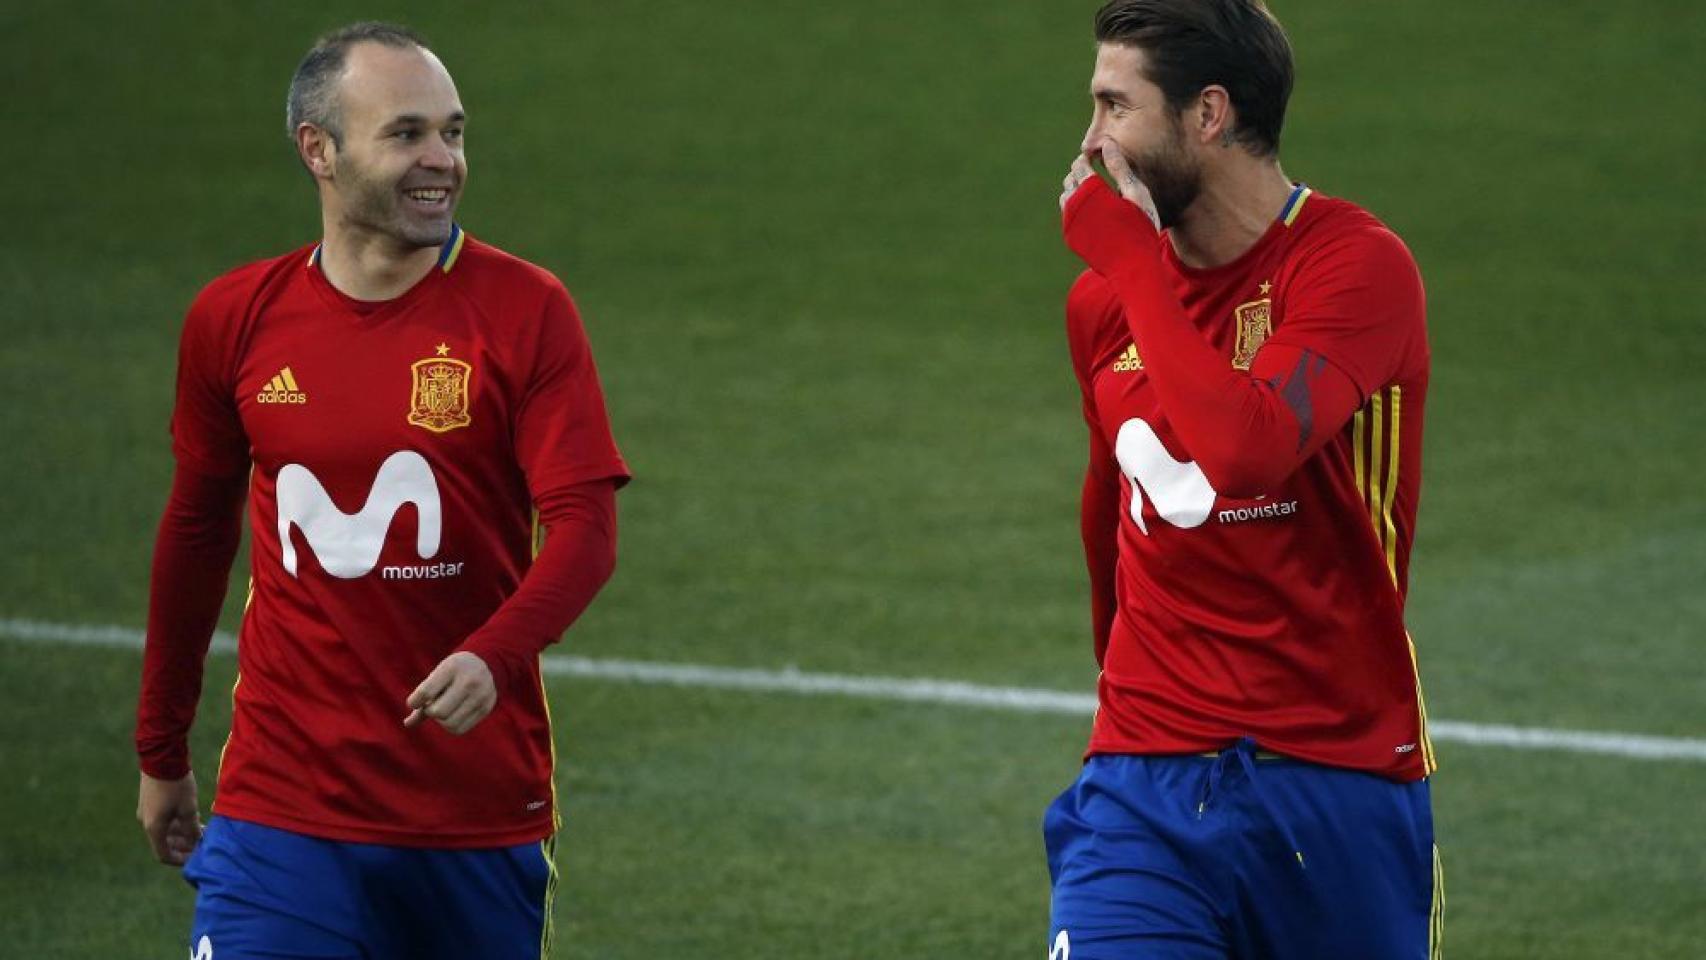 Iniesta y Ramos durante un entrenamiento de la selección.